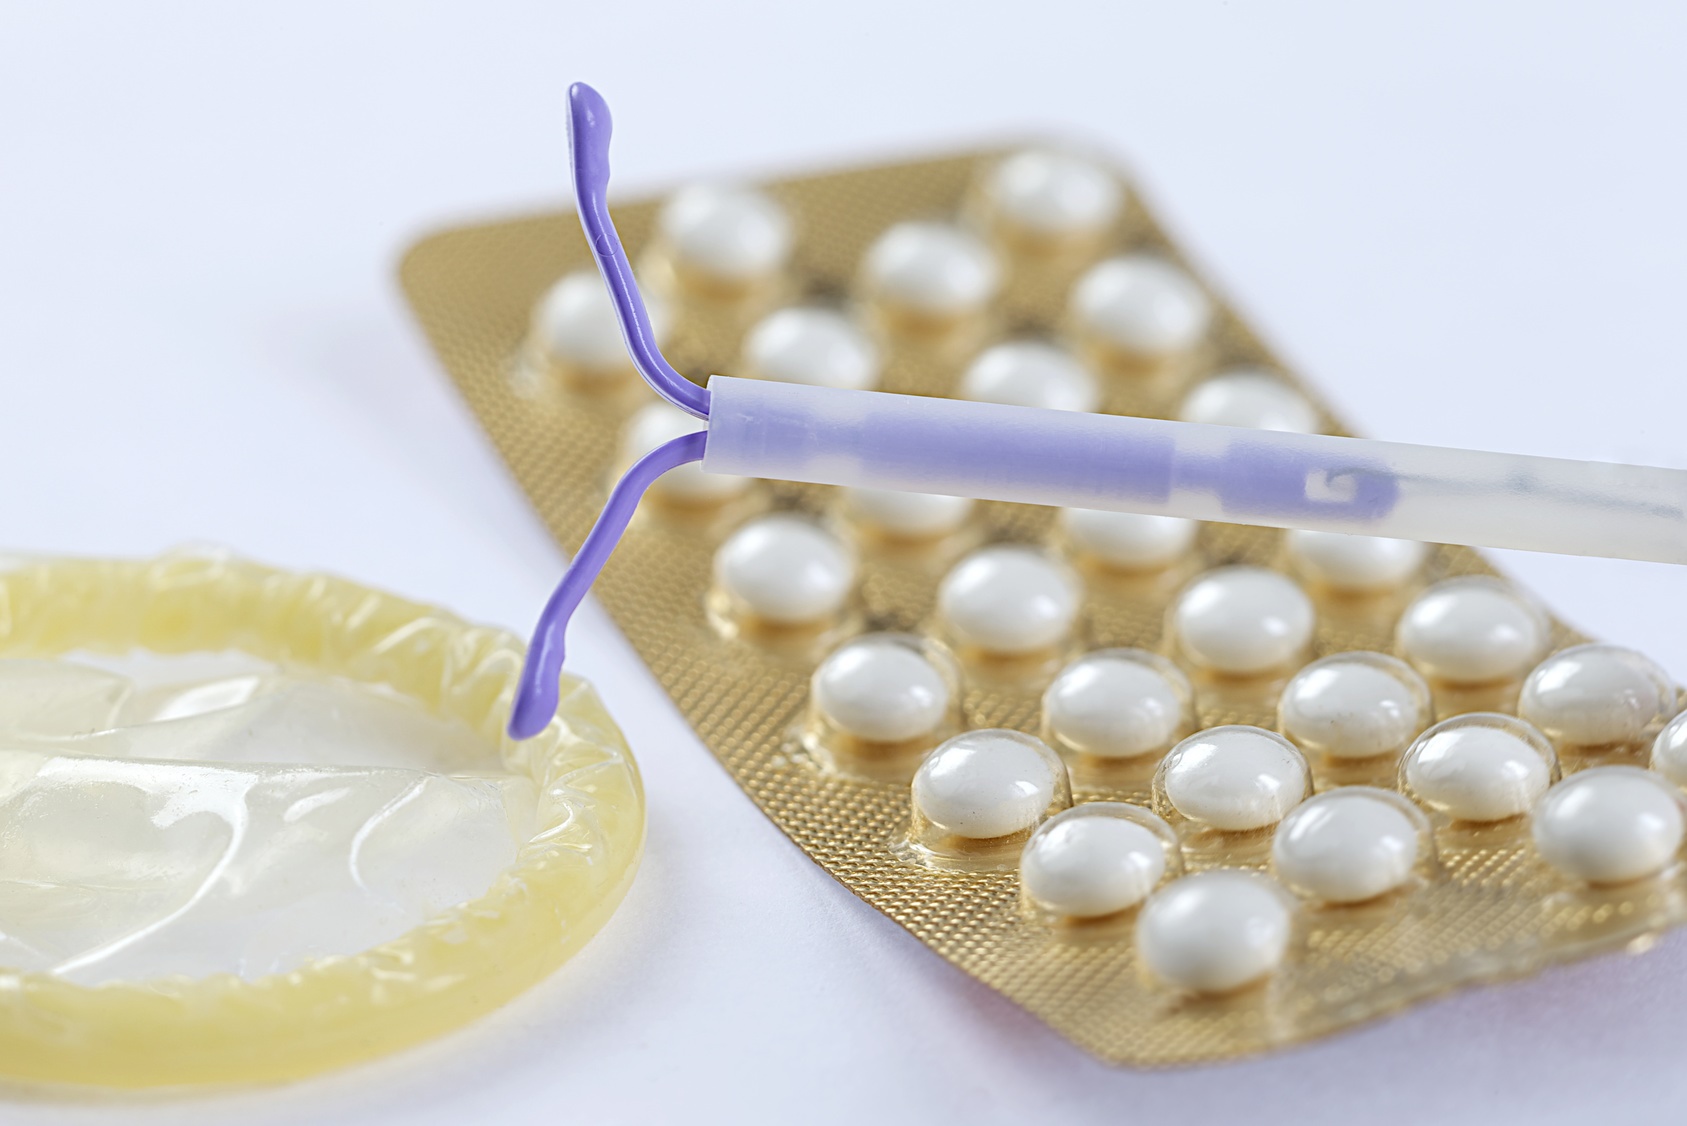 Le stérilet, également appelé dispositif intra-utérin, serait le contraceptif le plus efficace.  © JPC-PROD